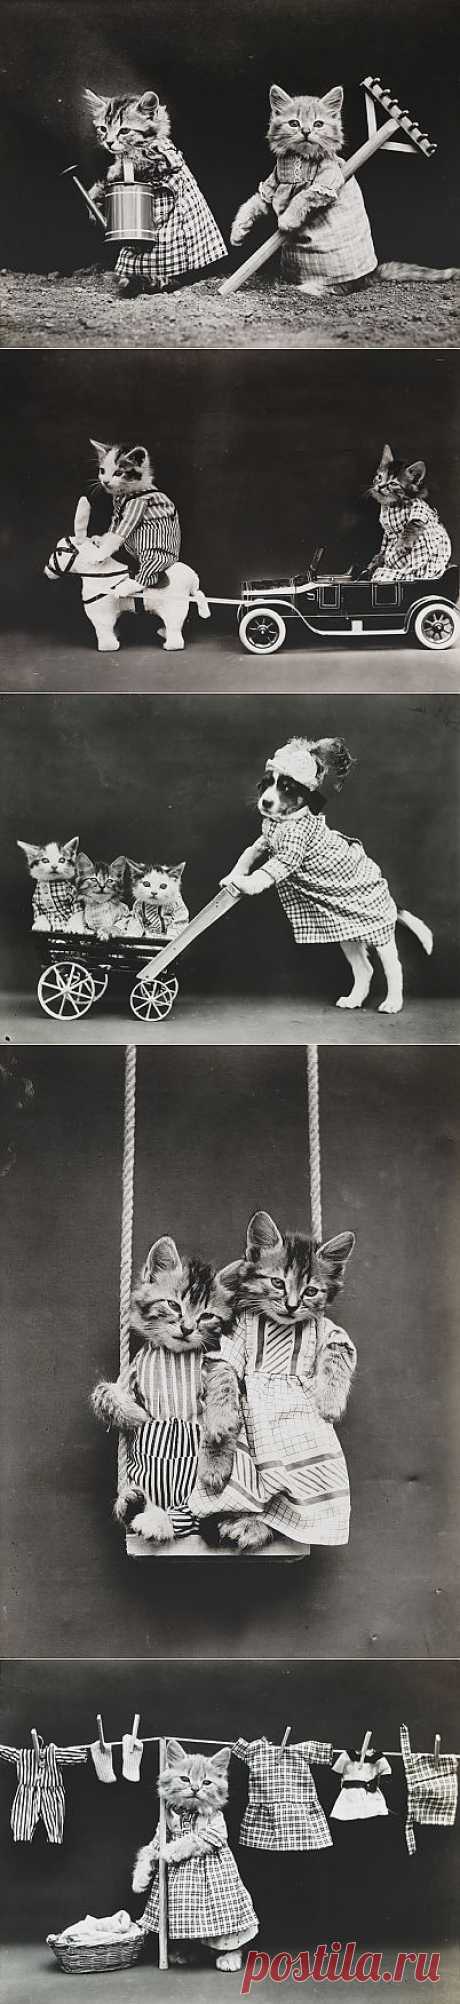 Эти веселые фотографии, как полагают датированные 1914 годом, являются первыми кошачьими мемами — или «LOLcat» (Смешными кошками). Термин впервые зарегистрирован в 2006 году, для определения изображения, которое сочетает в себе юмористический снимок кошки с забавным текстом выше или ниже. Фото сделал американский фотографии Гарри Уиттьер Фрис. Предполагается, что он, возможно, на самом деле был одним из пионеров явления «LOLcat», а не поколение двухтысячных.